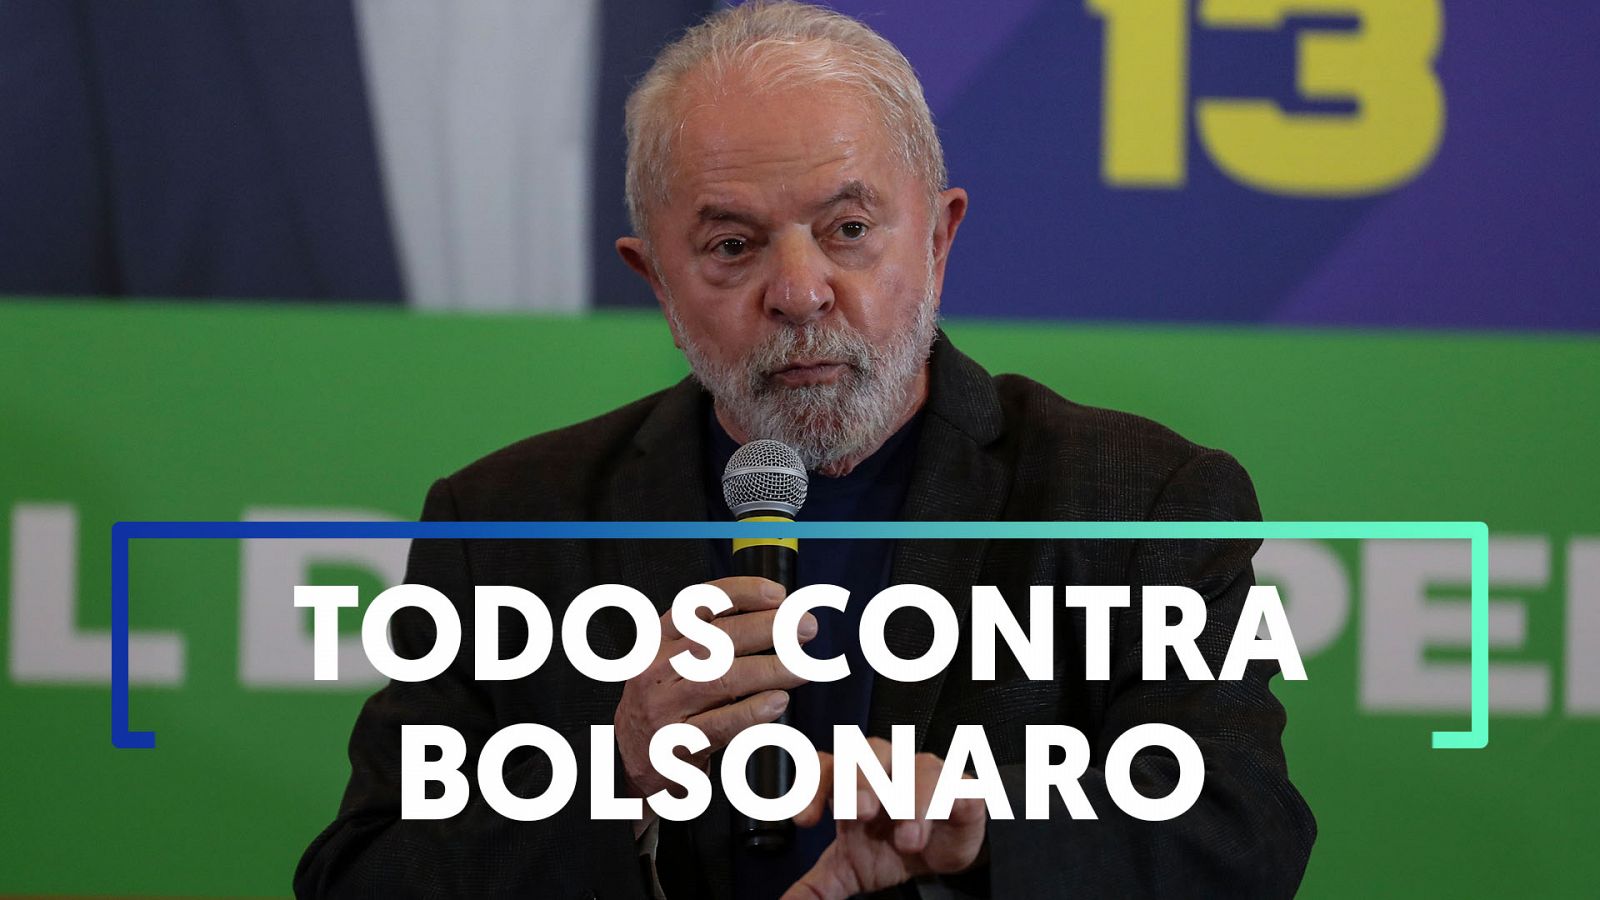 Elecciones Brasil: Lula propone un "bloque democrático" contra Bolsonaro